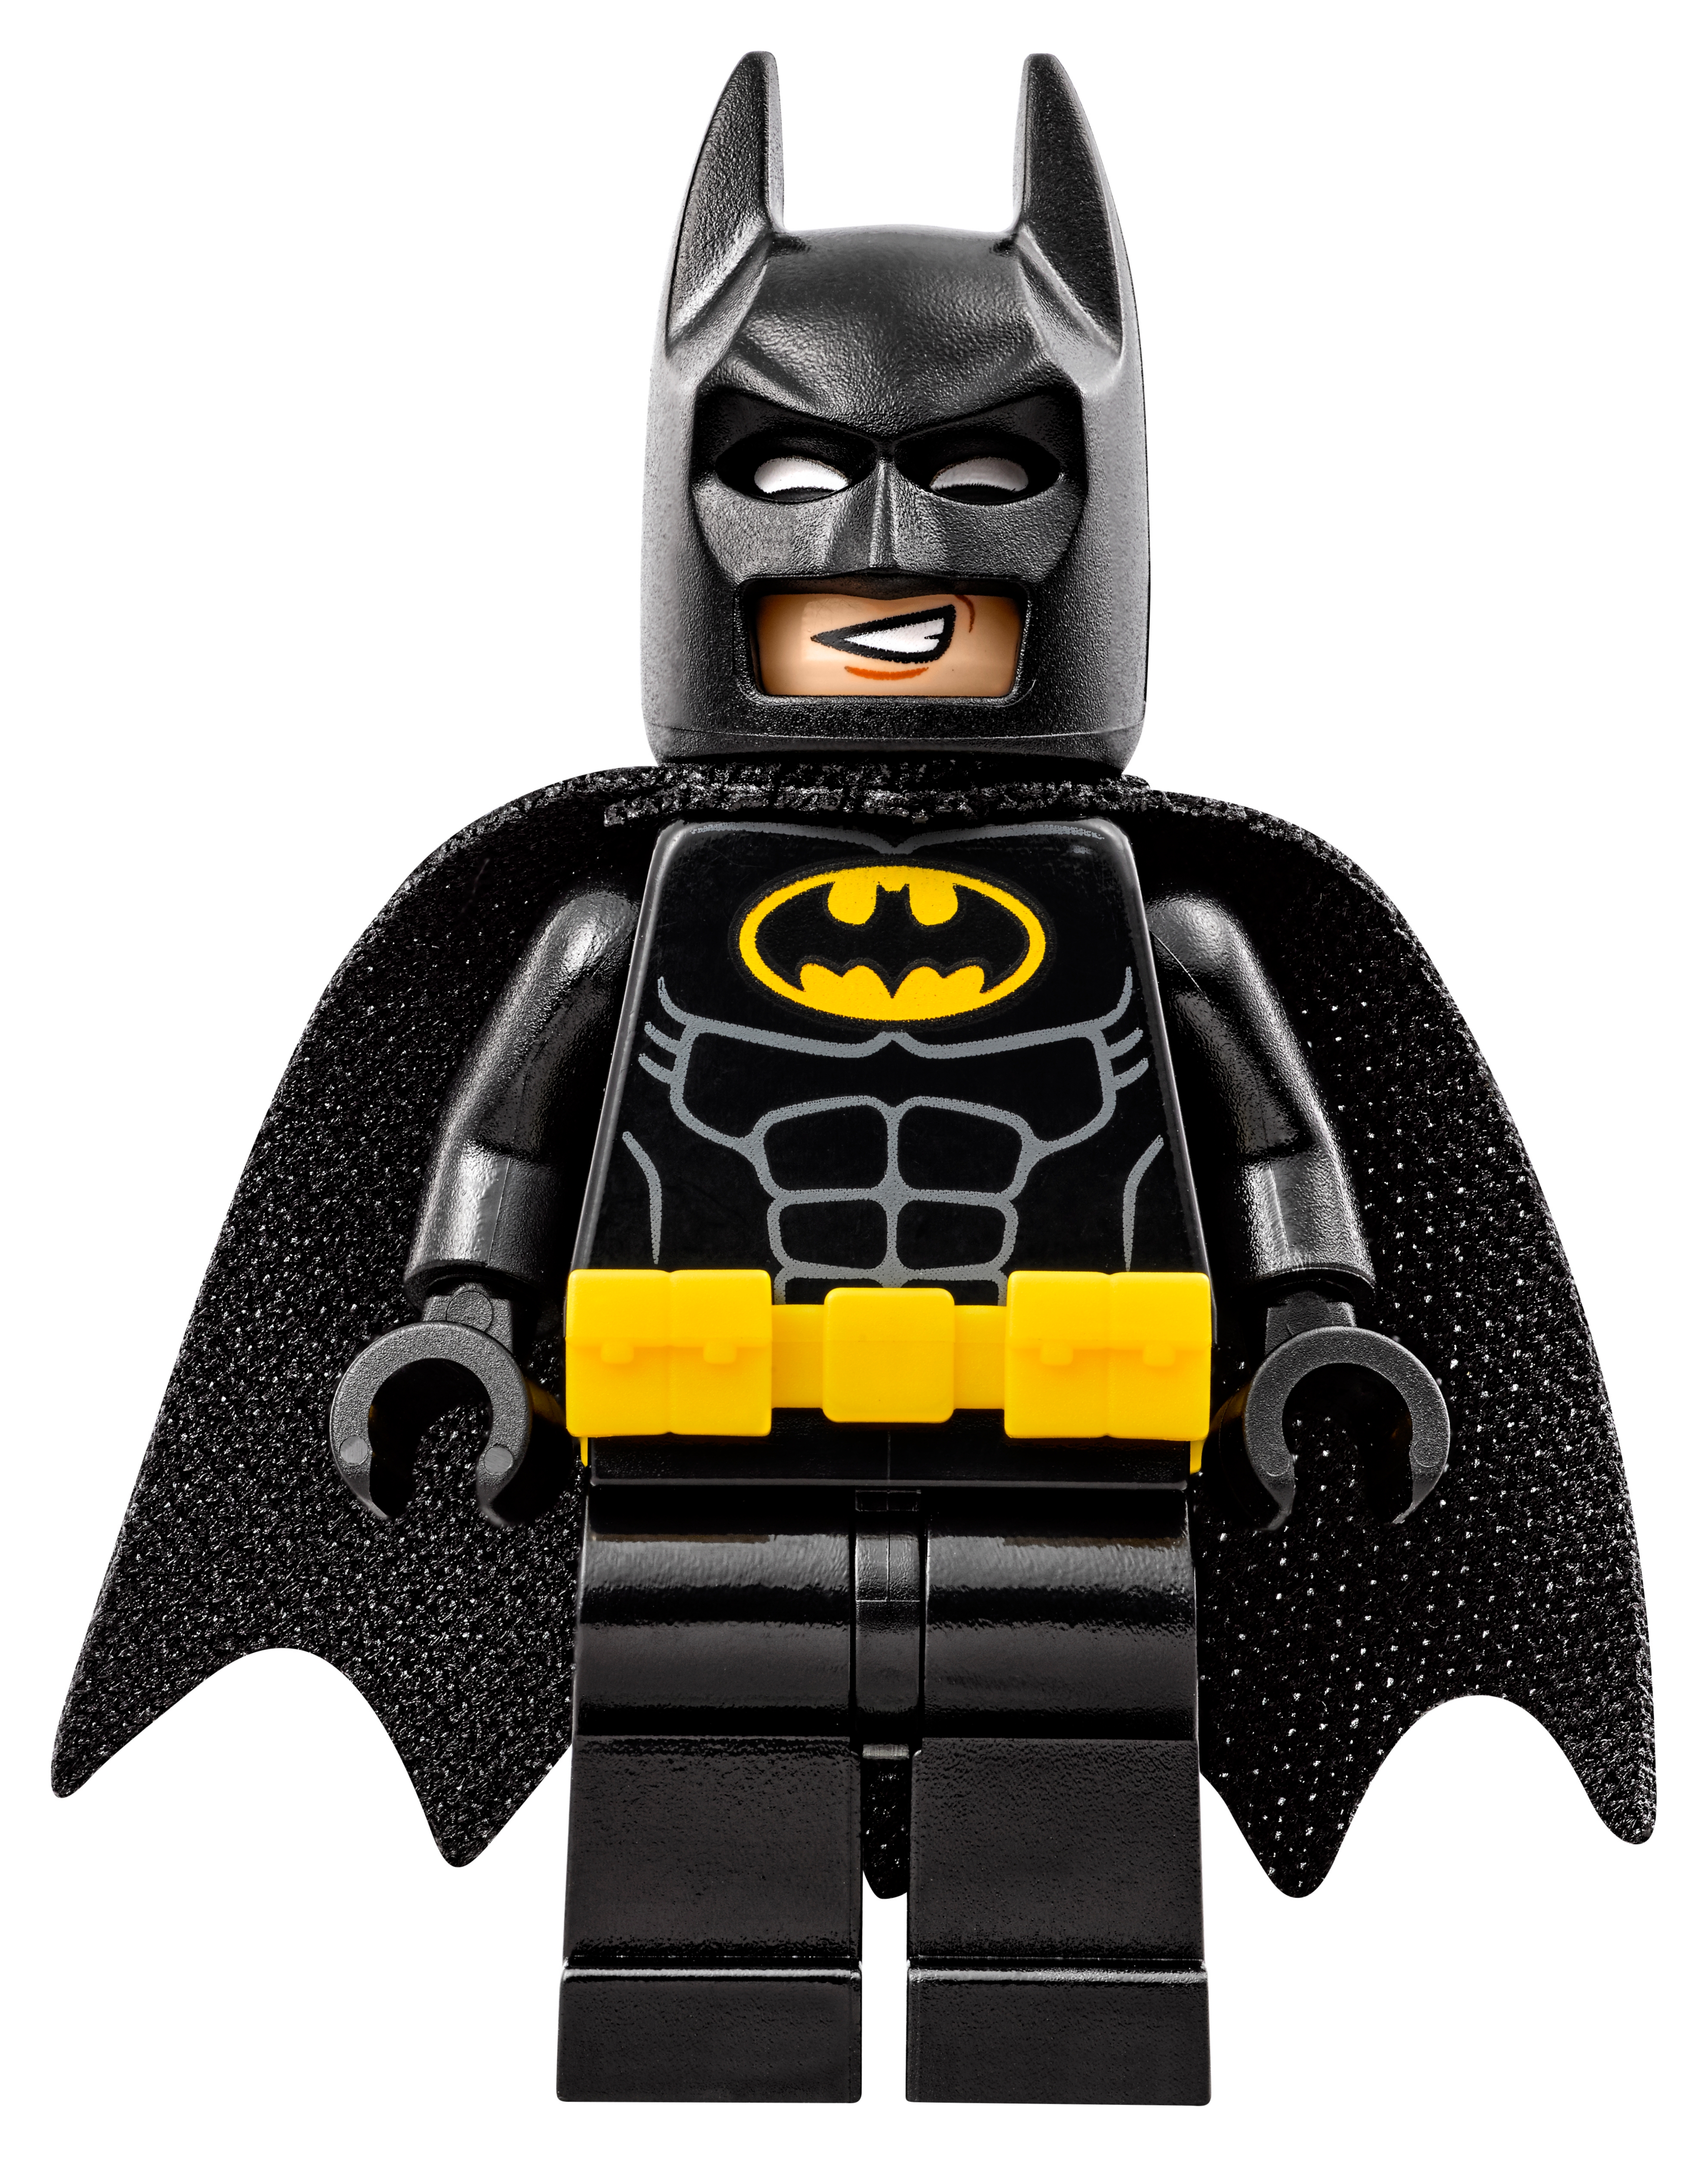 Scarecrow GENUINE Minifigure Figure! LEGO Batman Movie 70910 